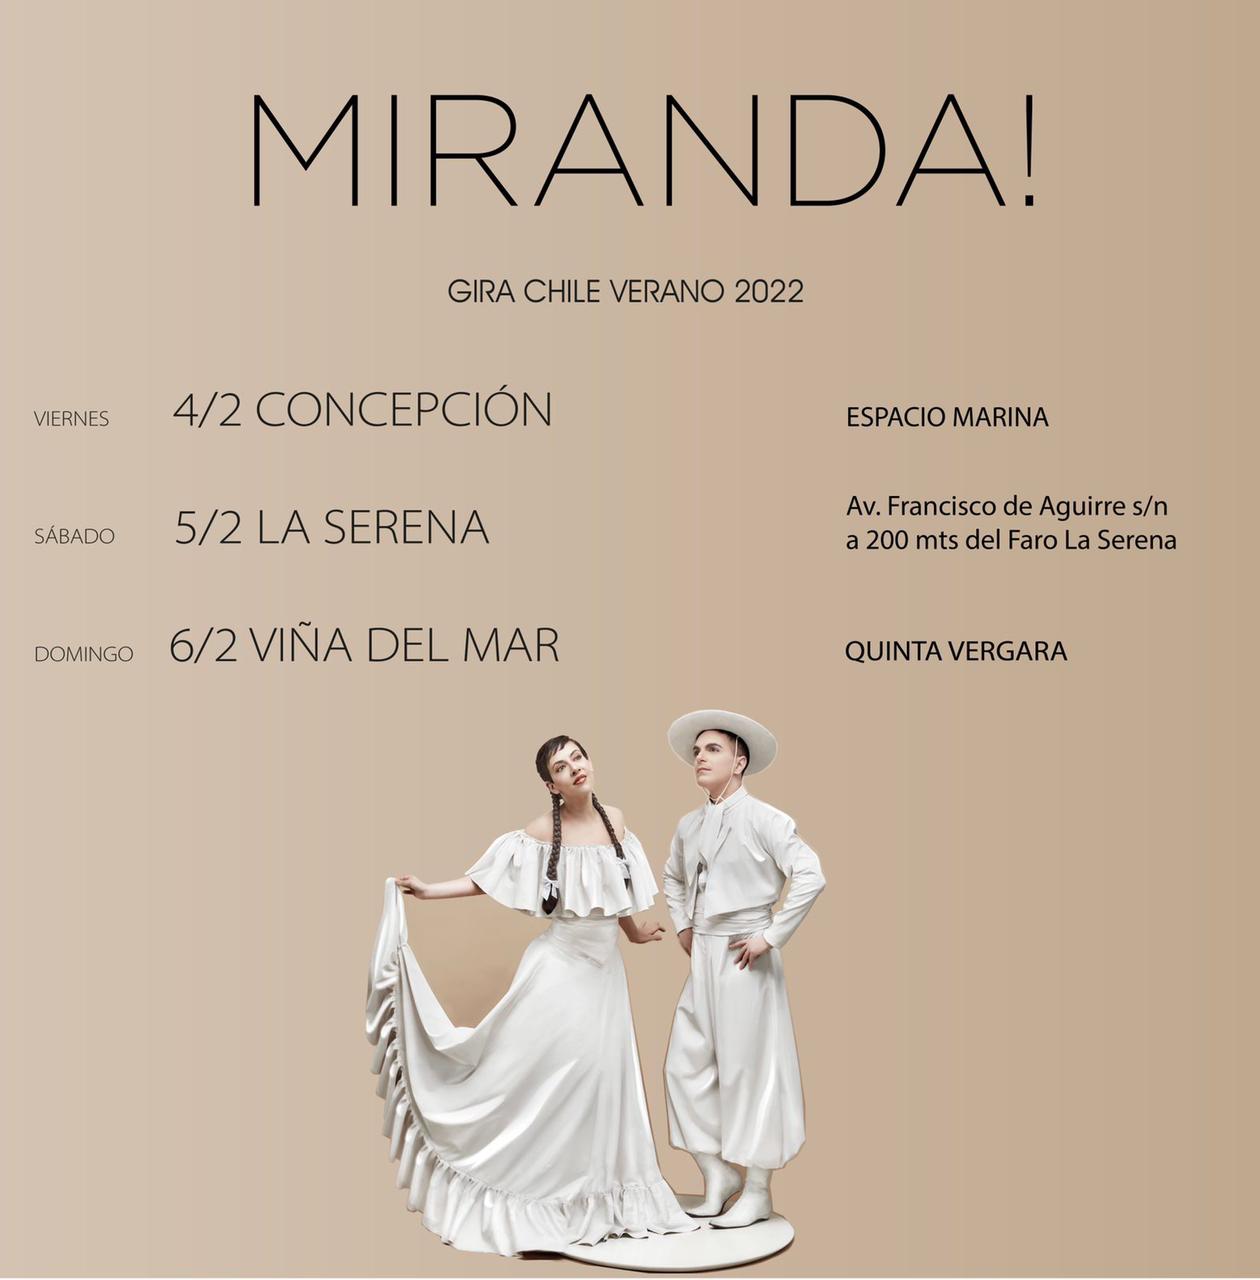 Miranda! se presentará en el norte, centro y sur de Chile en febrero